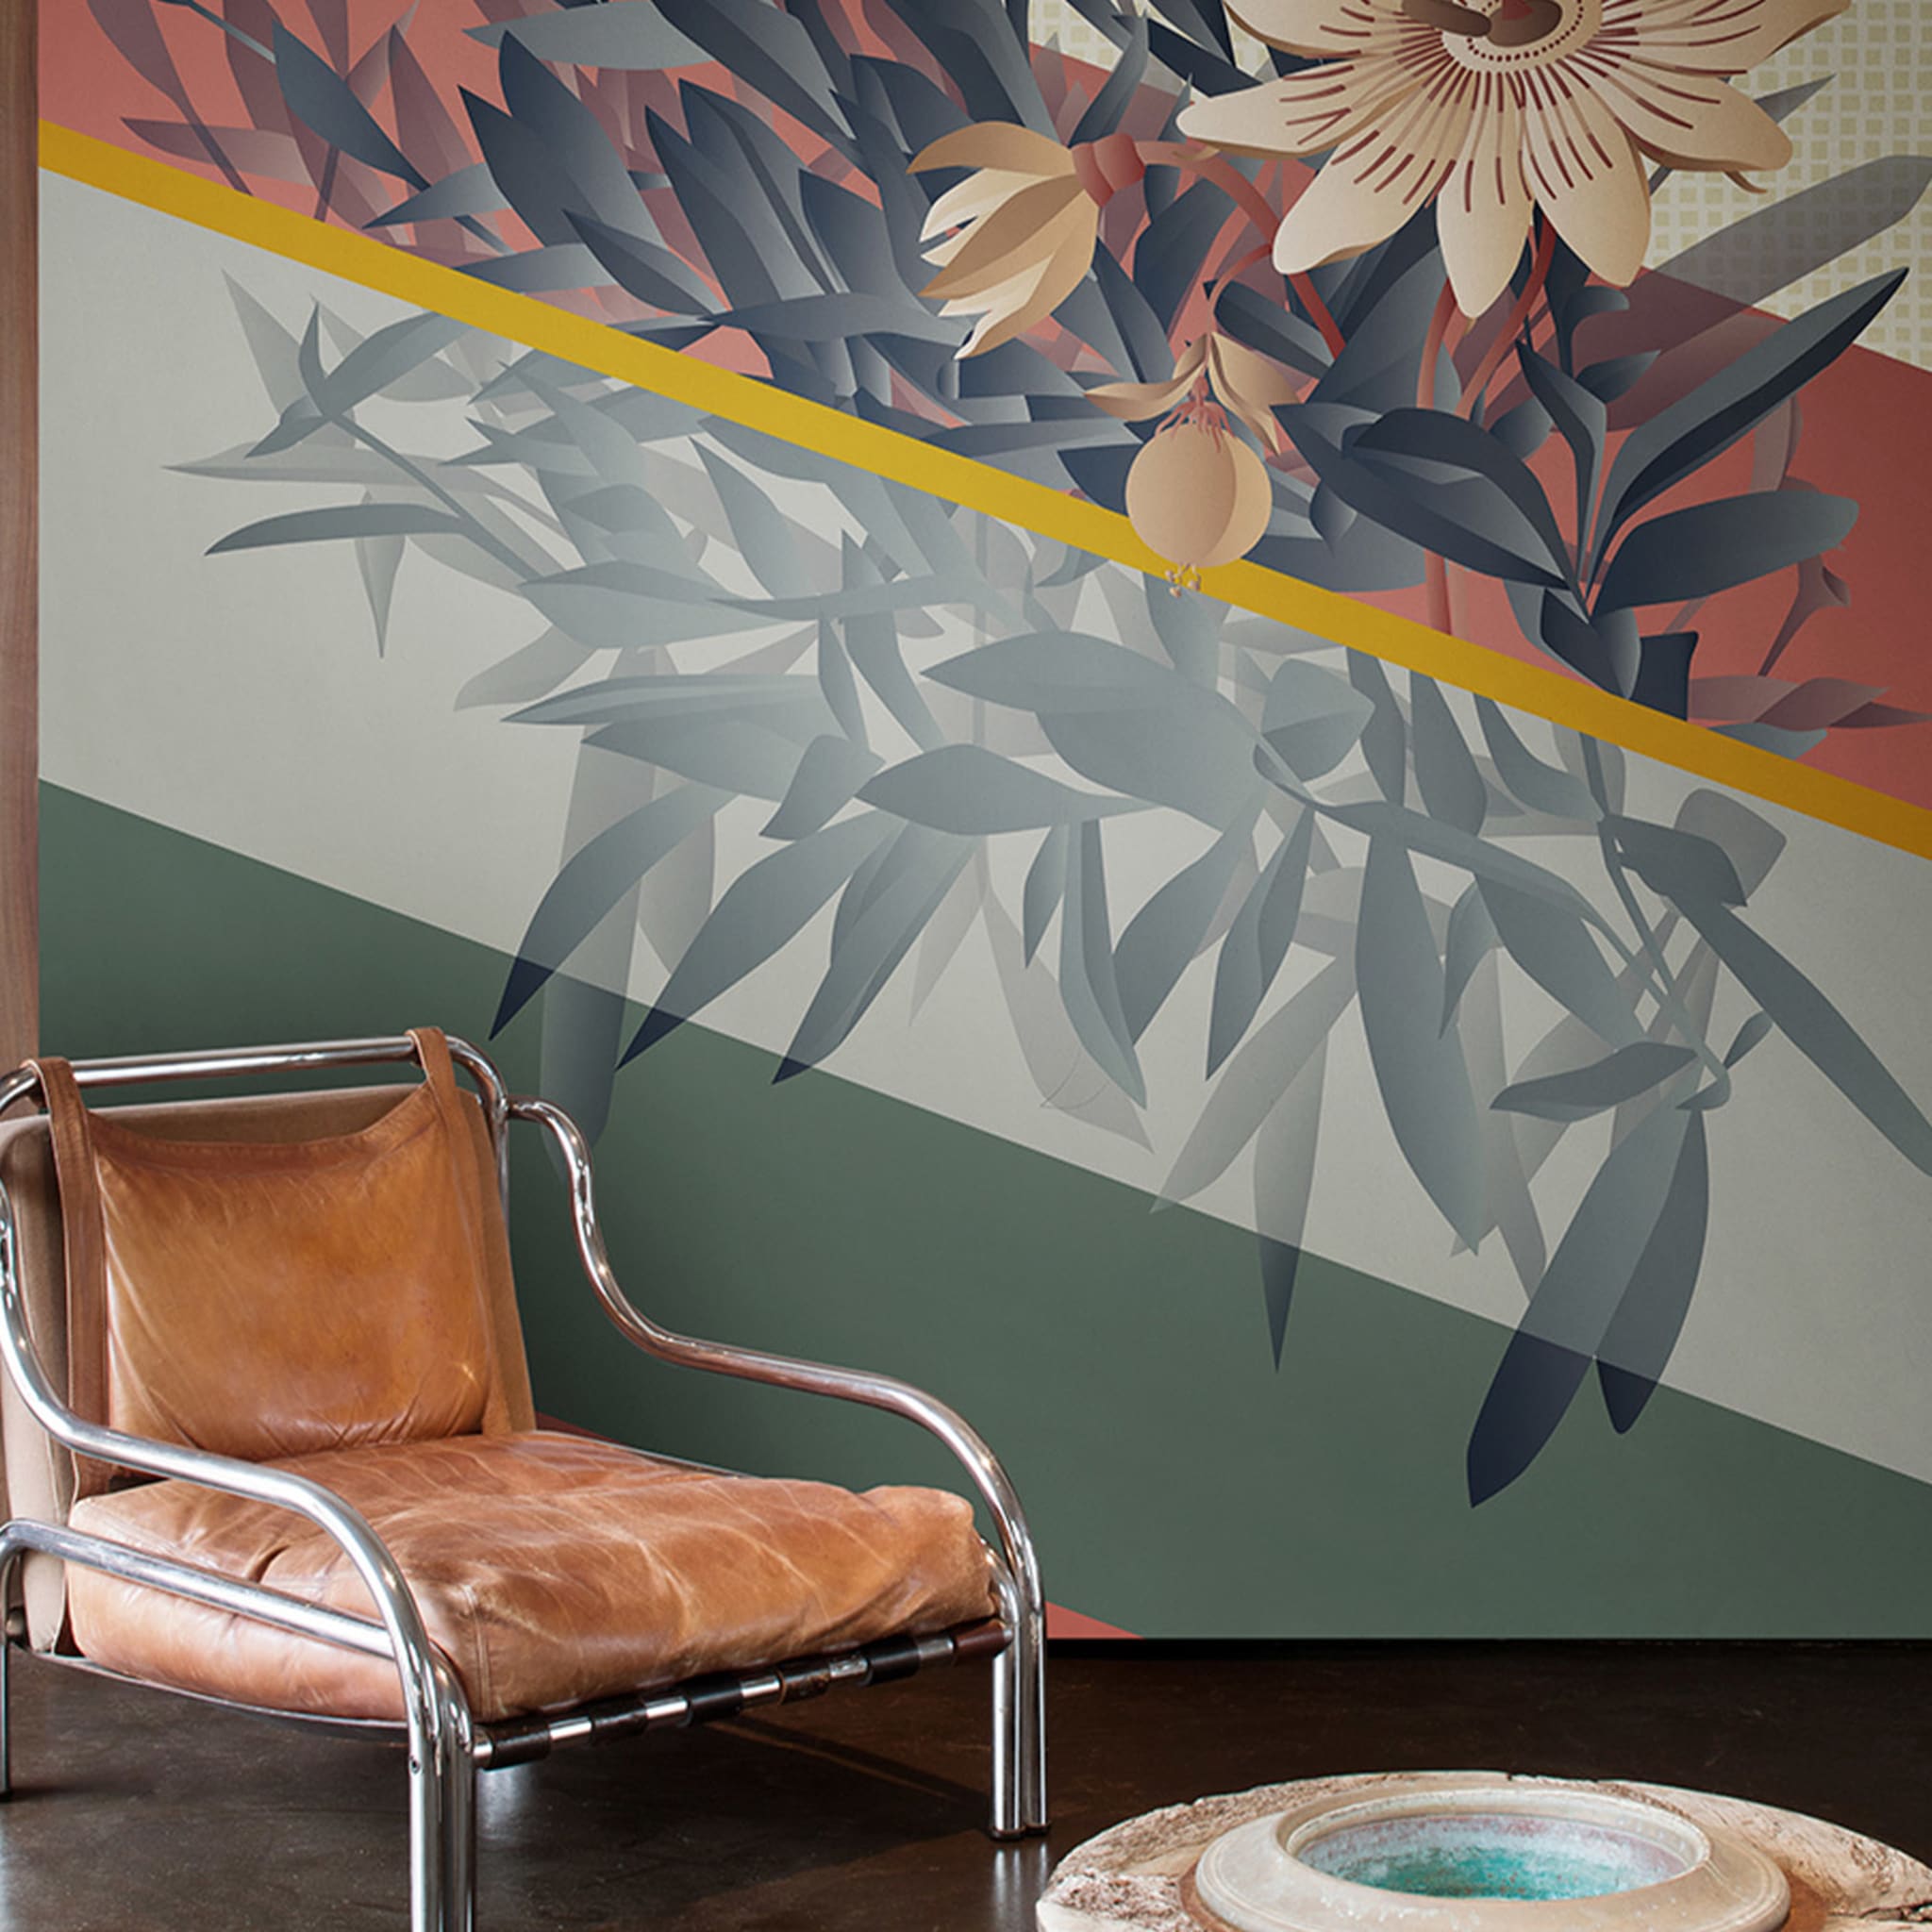 Passiflora In Caeruela Wallpaper By Cristina Celestino - Alternative view 1